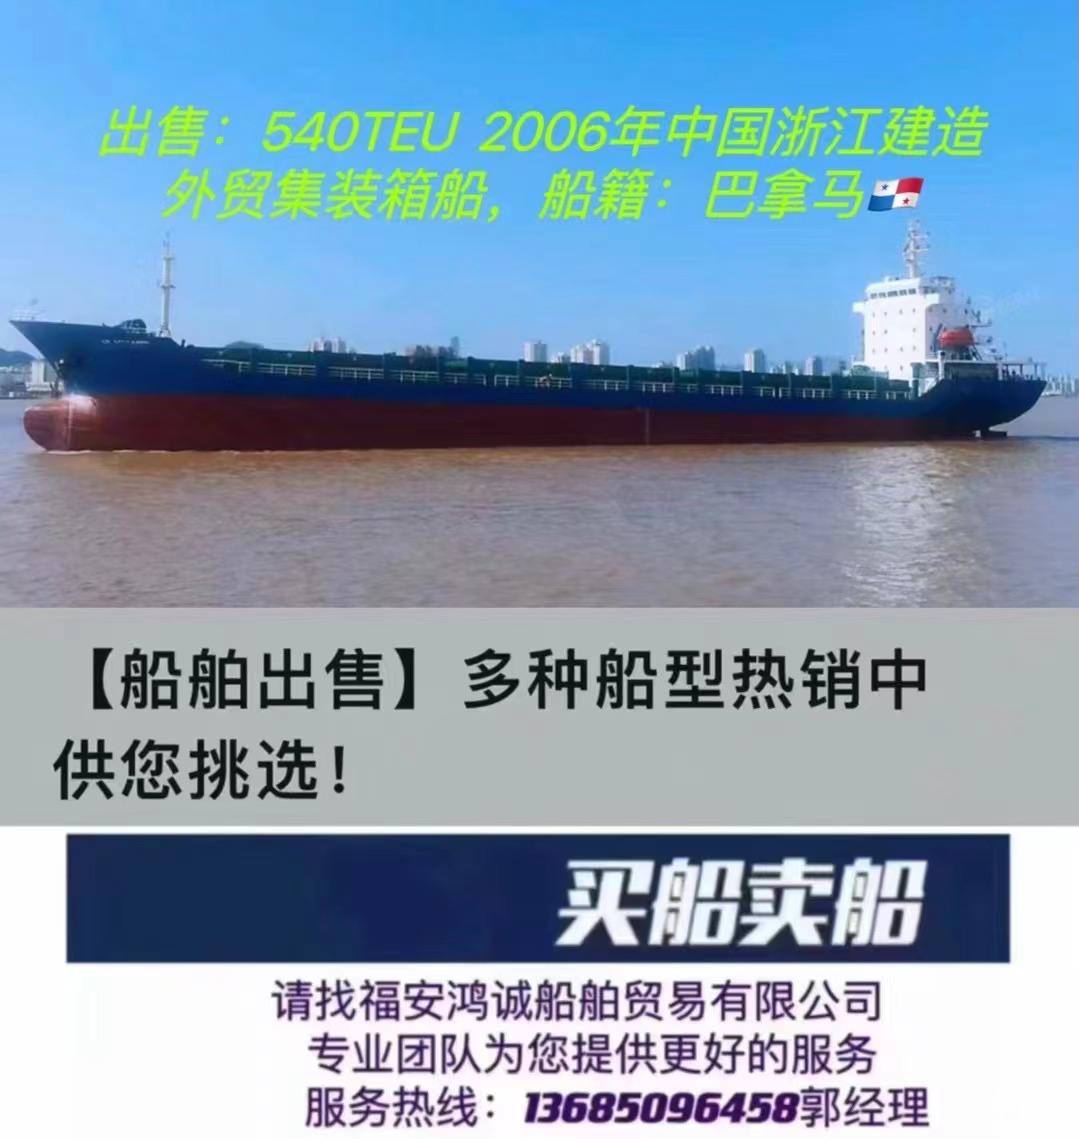 出售：8300吨外贸集装箱船  装载：540TEU 建造年月：2006年  